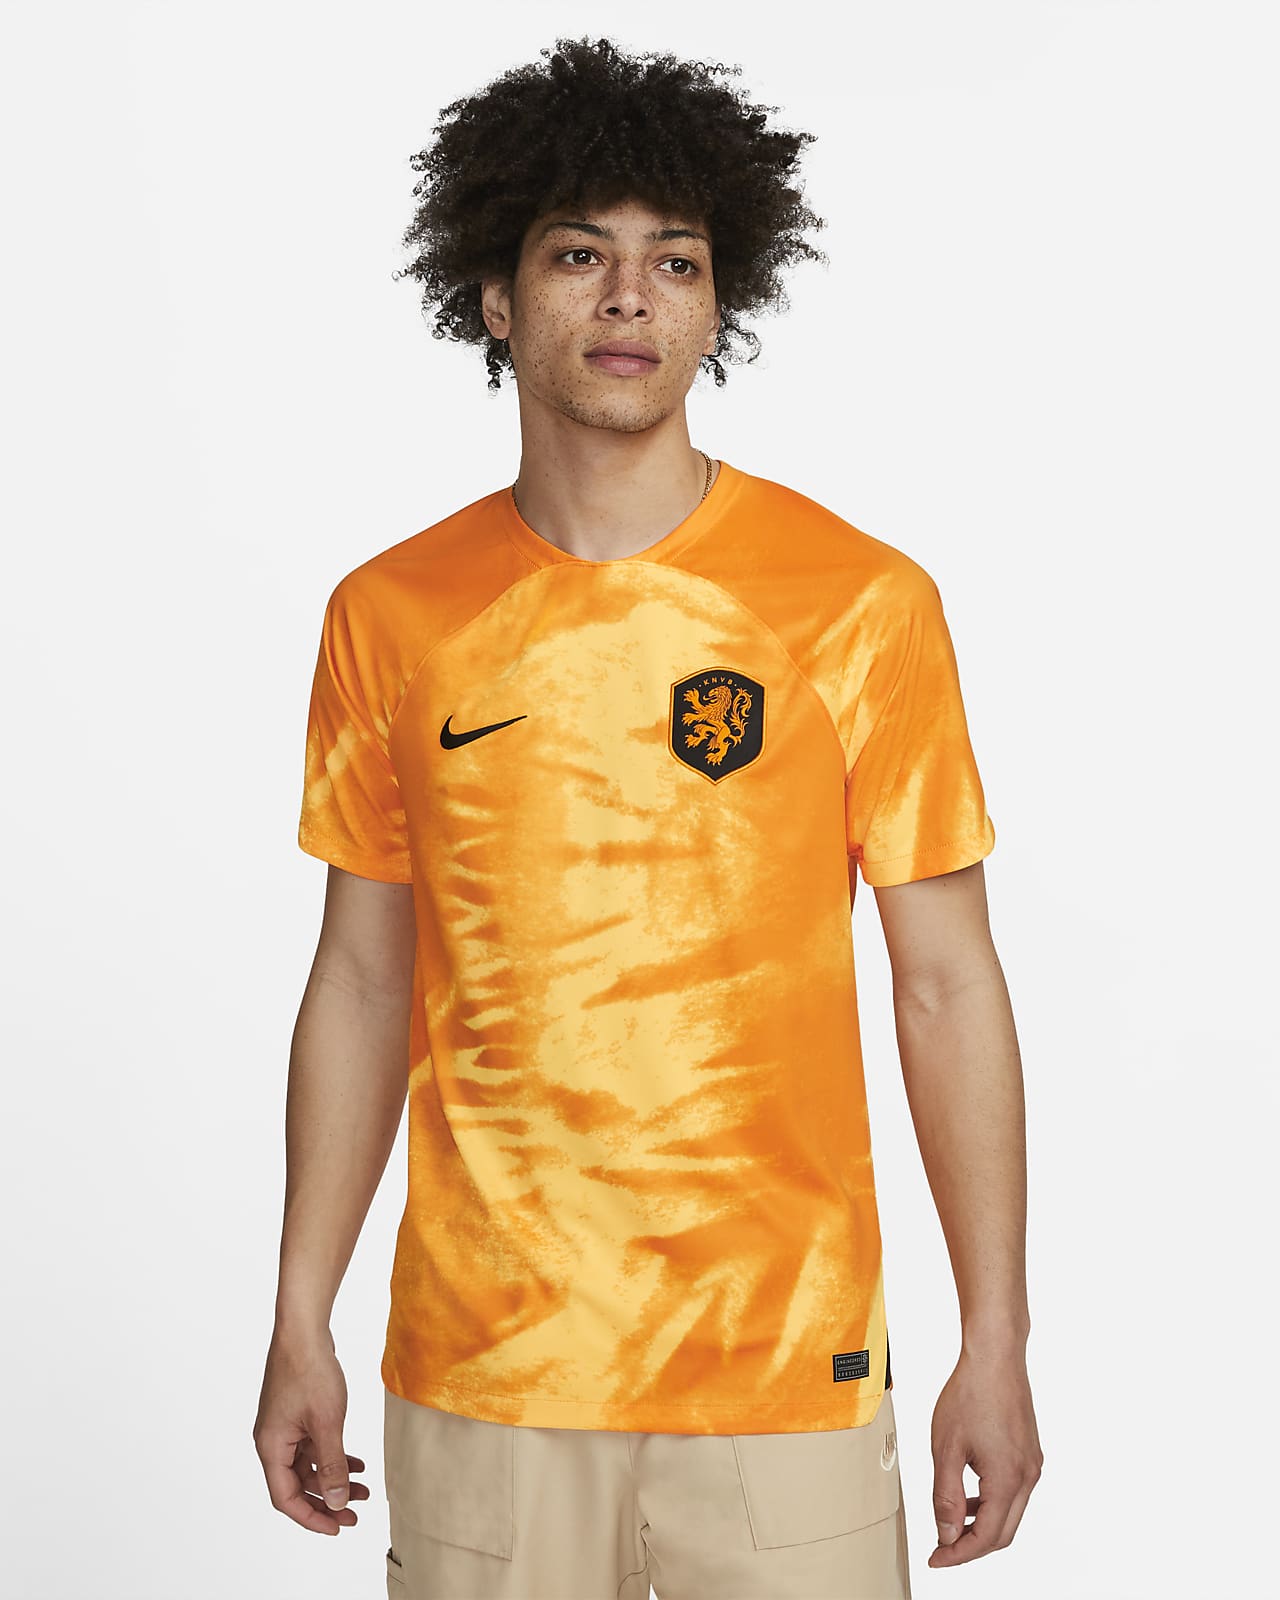 Mantsjoerije winnaar Autonomie Nederland 2022/23 Stadium Thuis Nike Dri-FIT voetbalshirt voor heren. Nike  NL